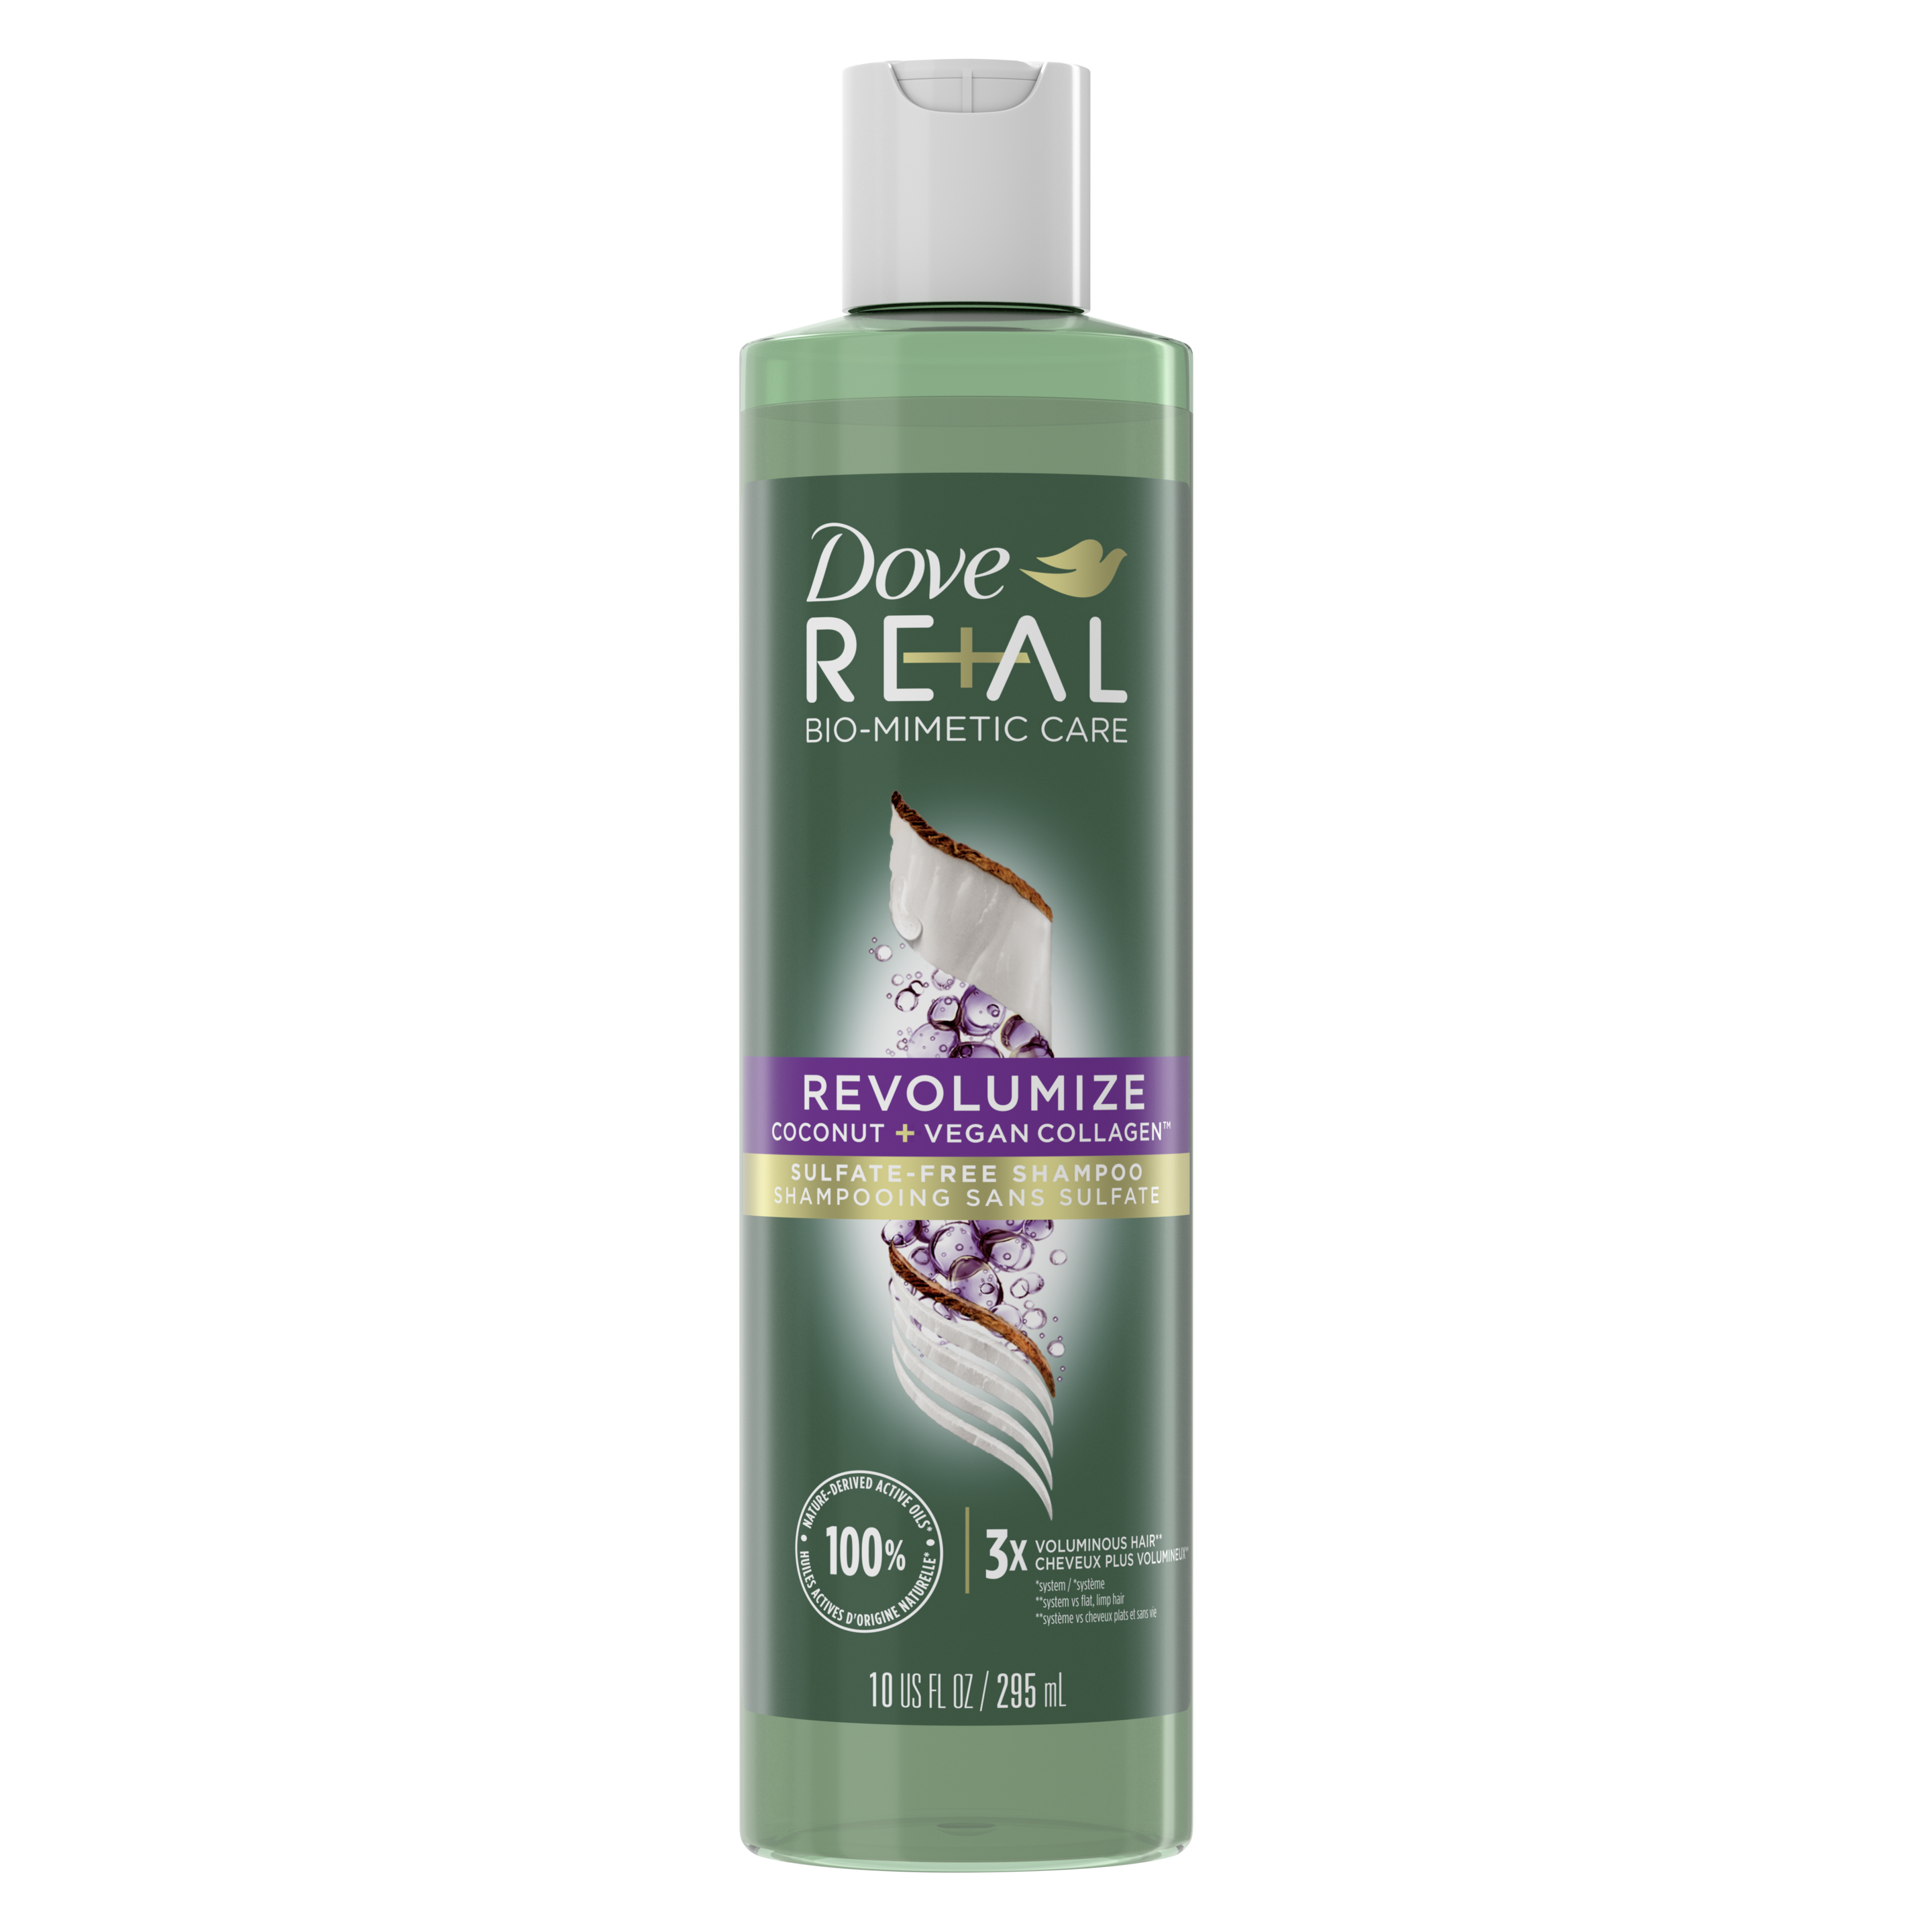 Dove RE+AL Bio-Mimetic Revolumize Coconut + Vegan Collagen Sulfate-Free Shampoo